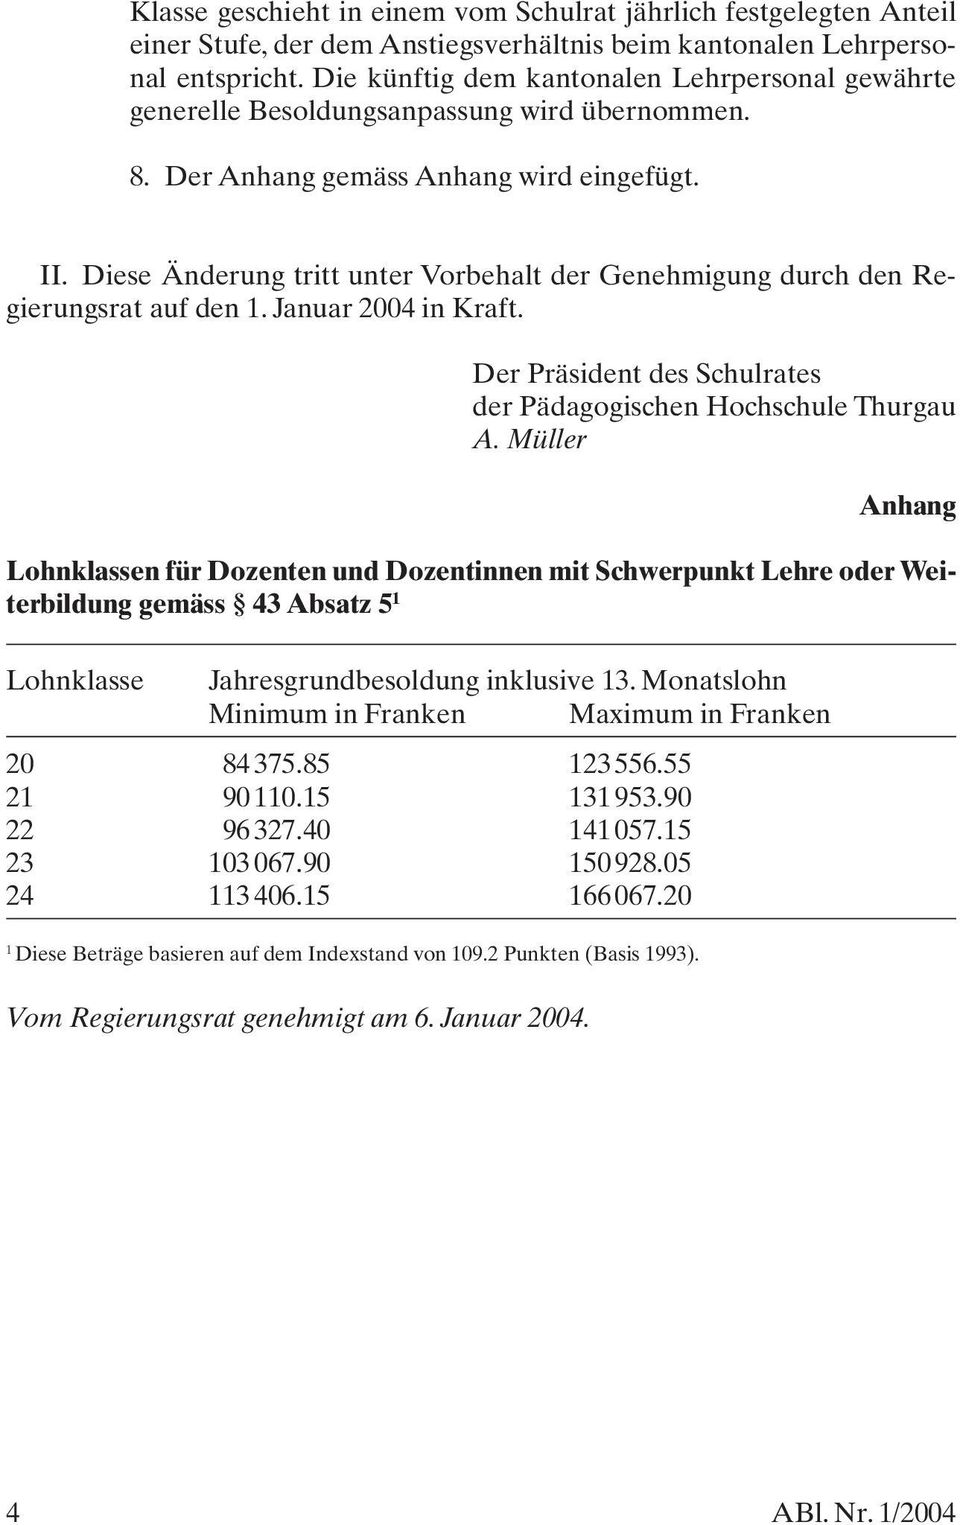 Diese Änderung tritt unter Vorbehalt der Genehmigung durch den Regierungsrat auf den 1. Januar 2004 in Kraft. Der Präsident des Schulrates der Pädagogischen Hochschule Thurgau A.